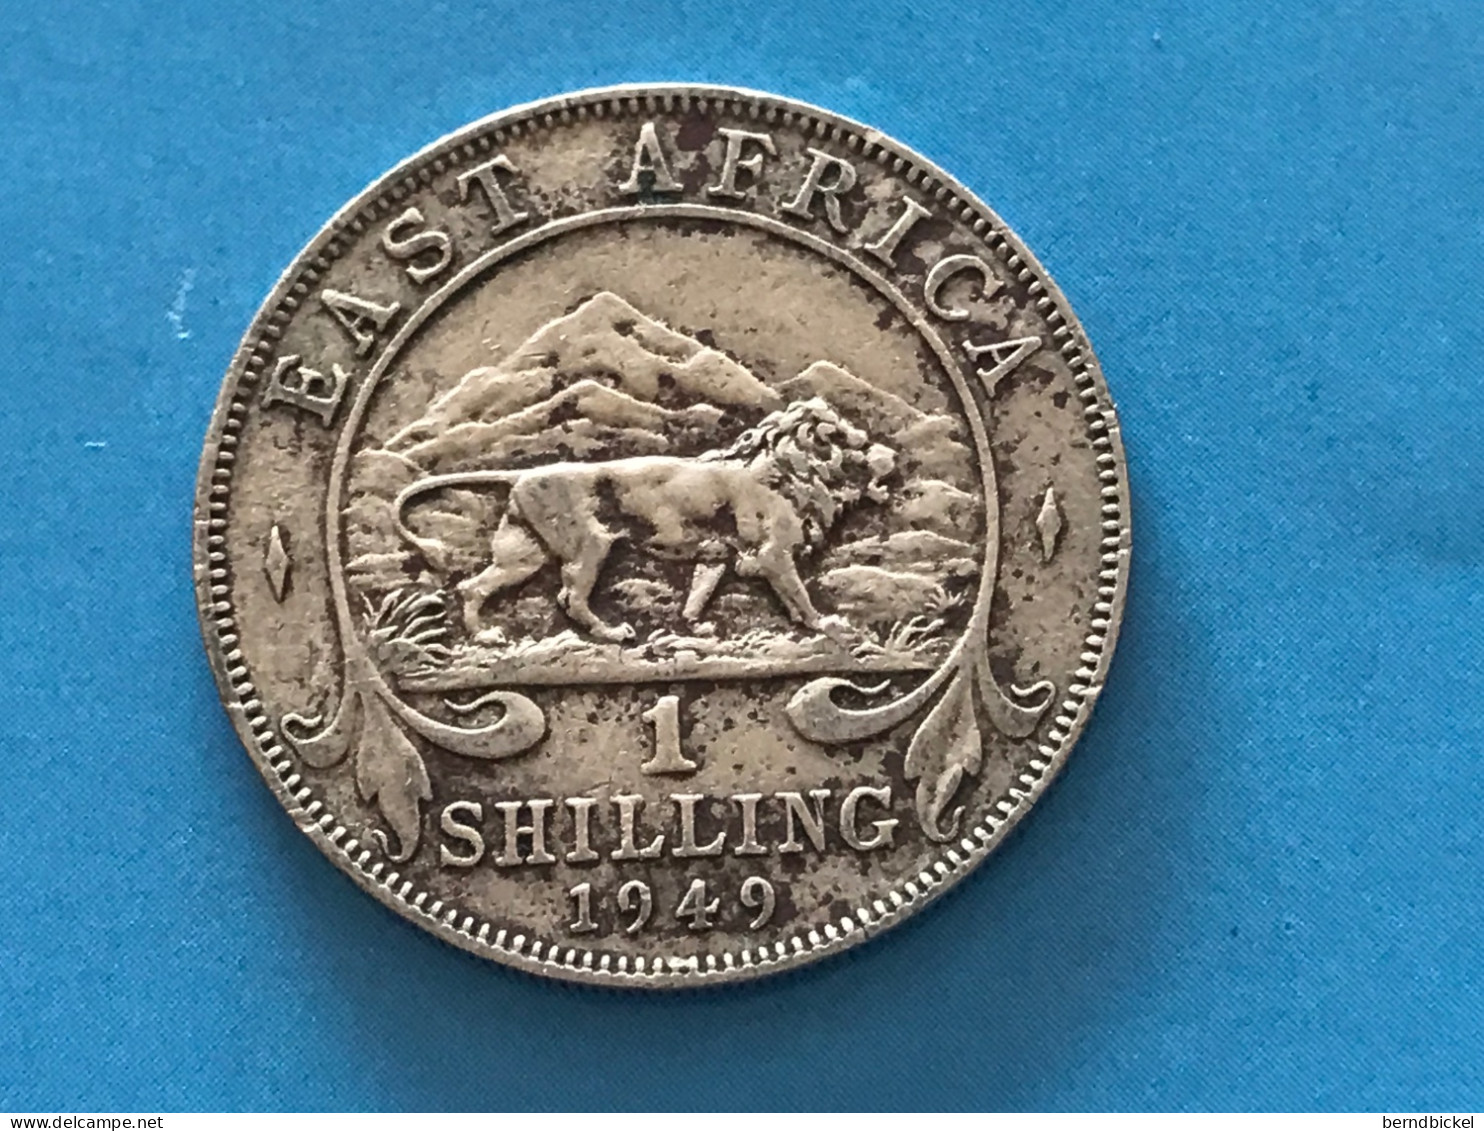 Münze Münzen Umlaufmünze East Africa 1 Shilling 1949 Münzzeichen H - Colonies